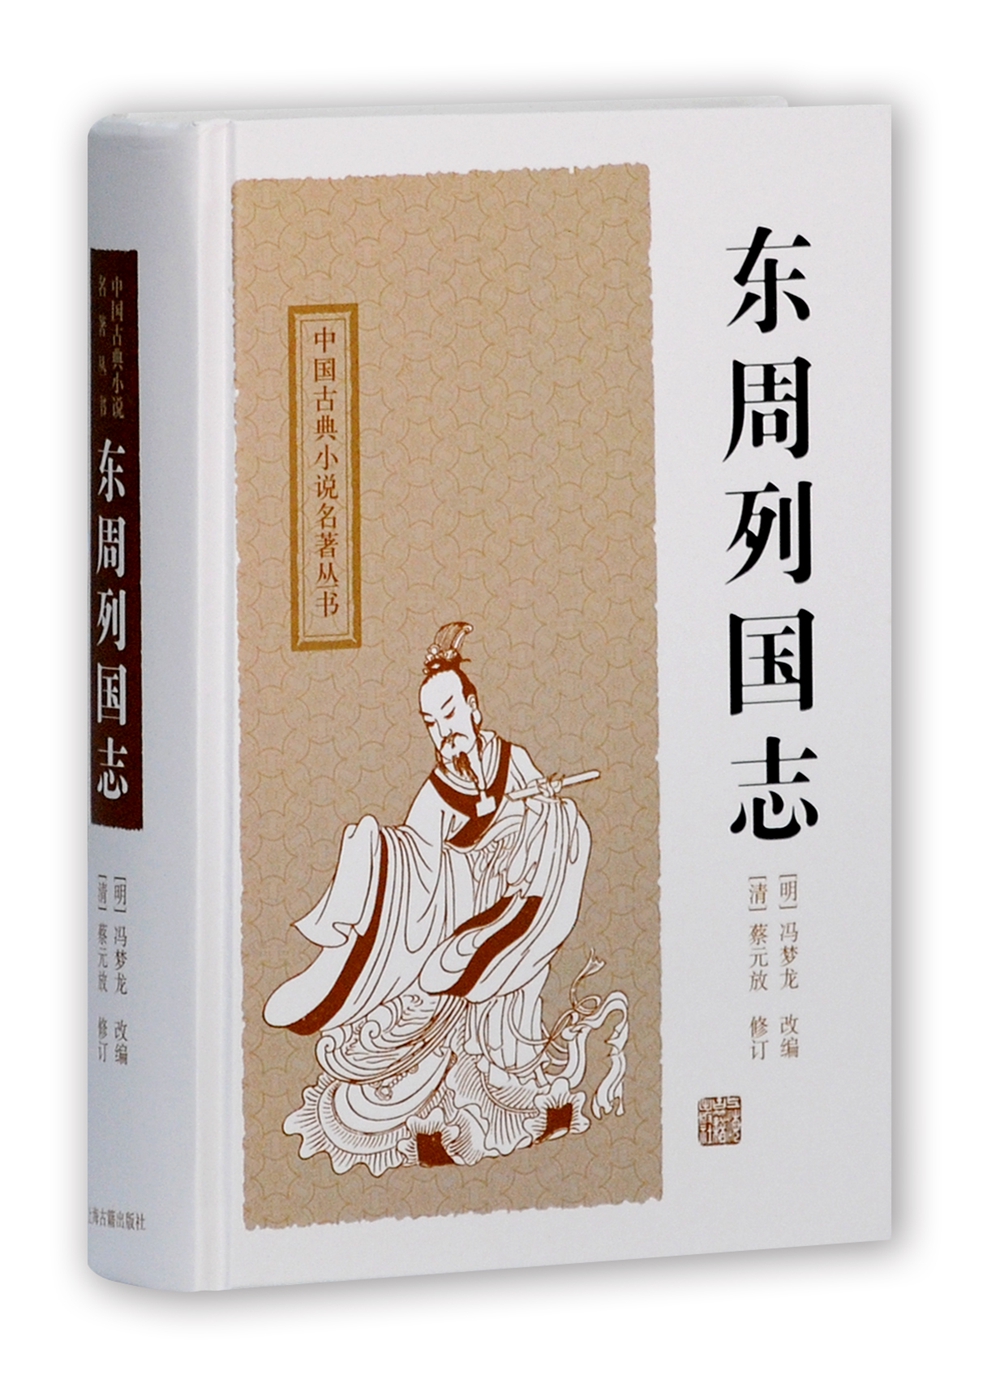 jd中国古典小说历史价格查询|中国古典小说价格比较